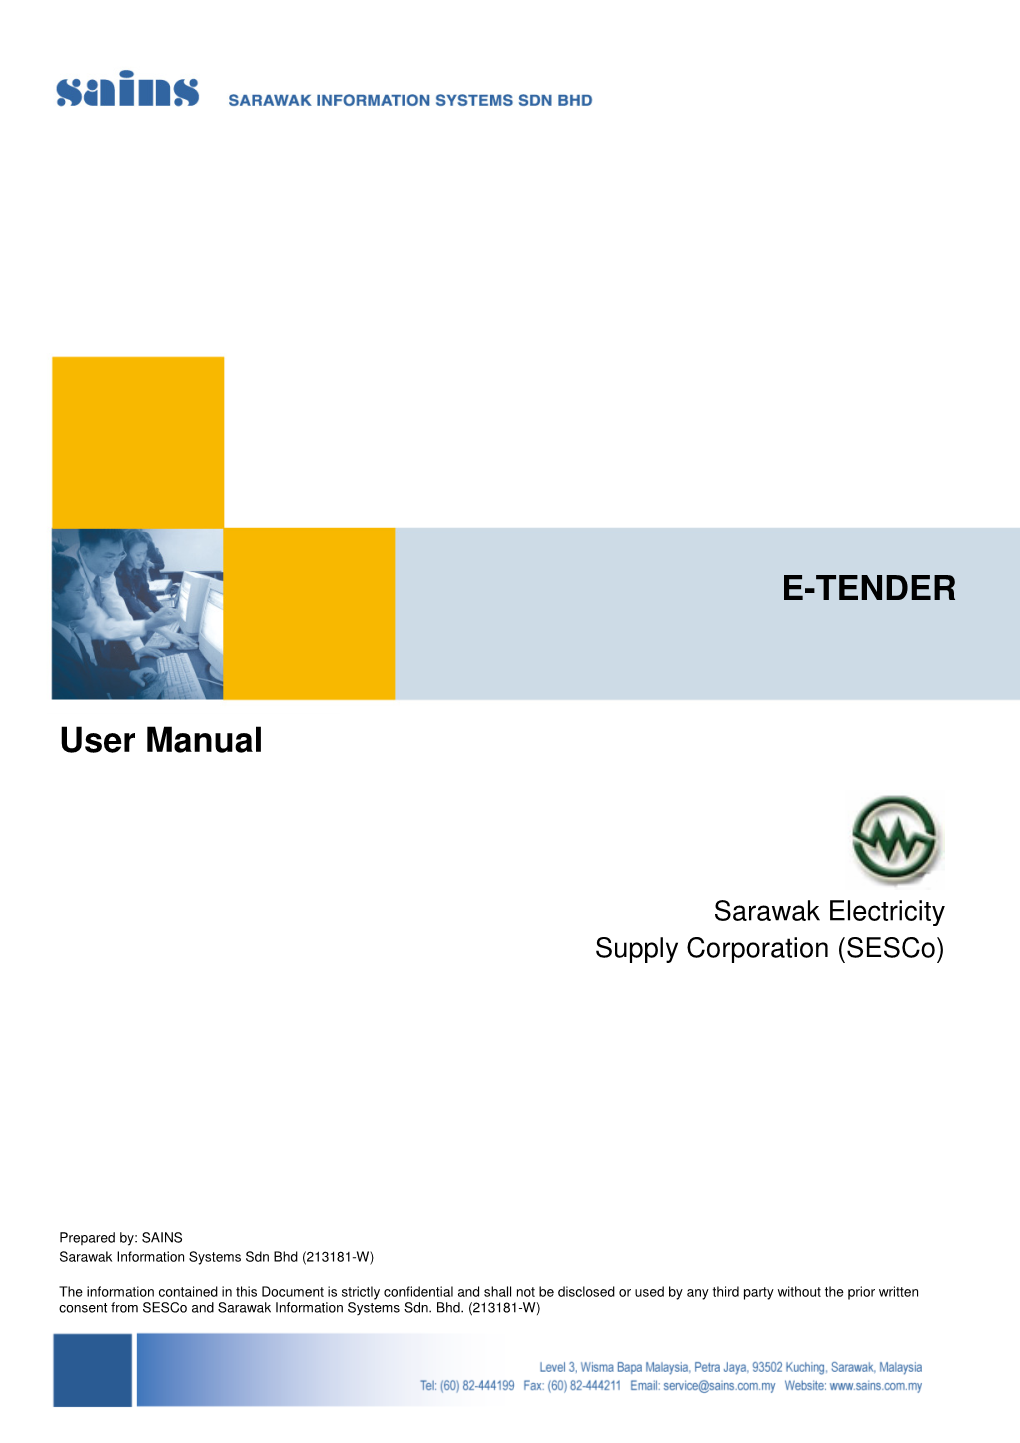 E-TENDER User Manual